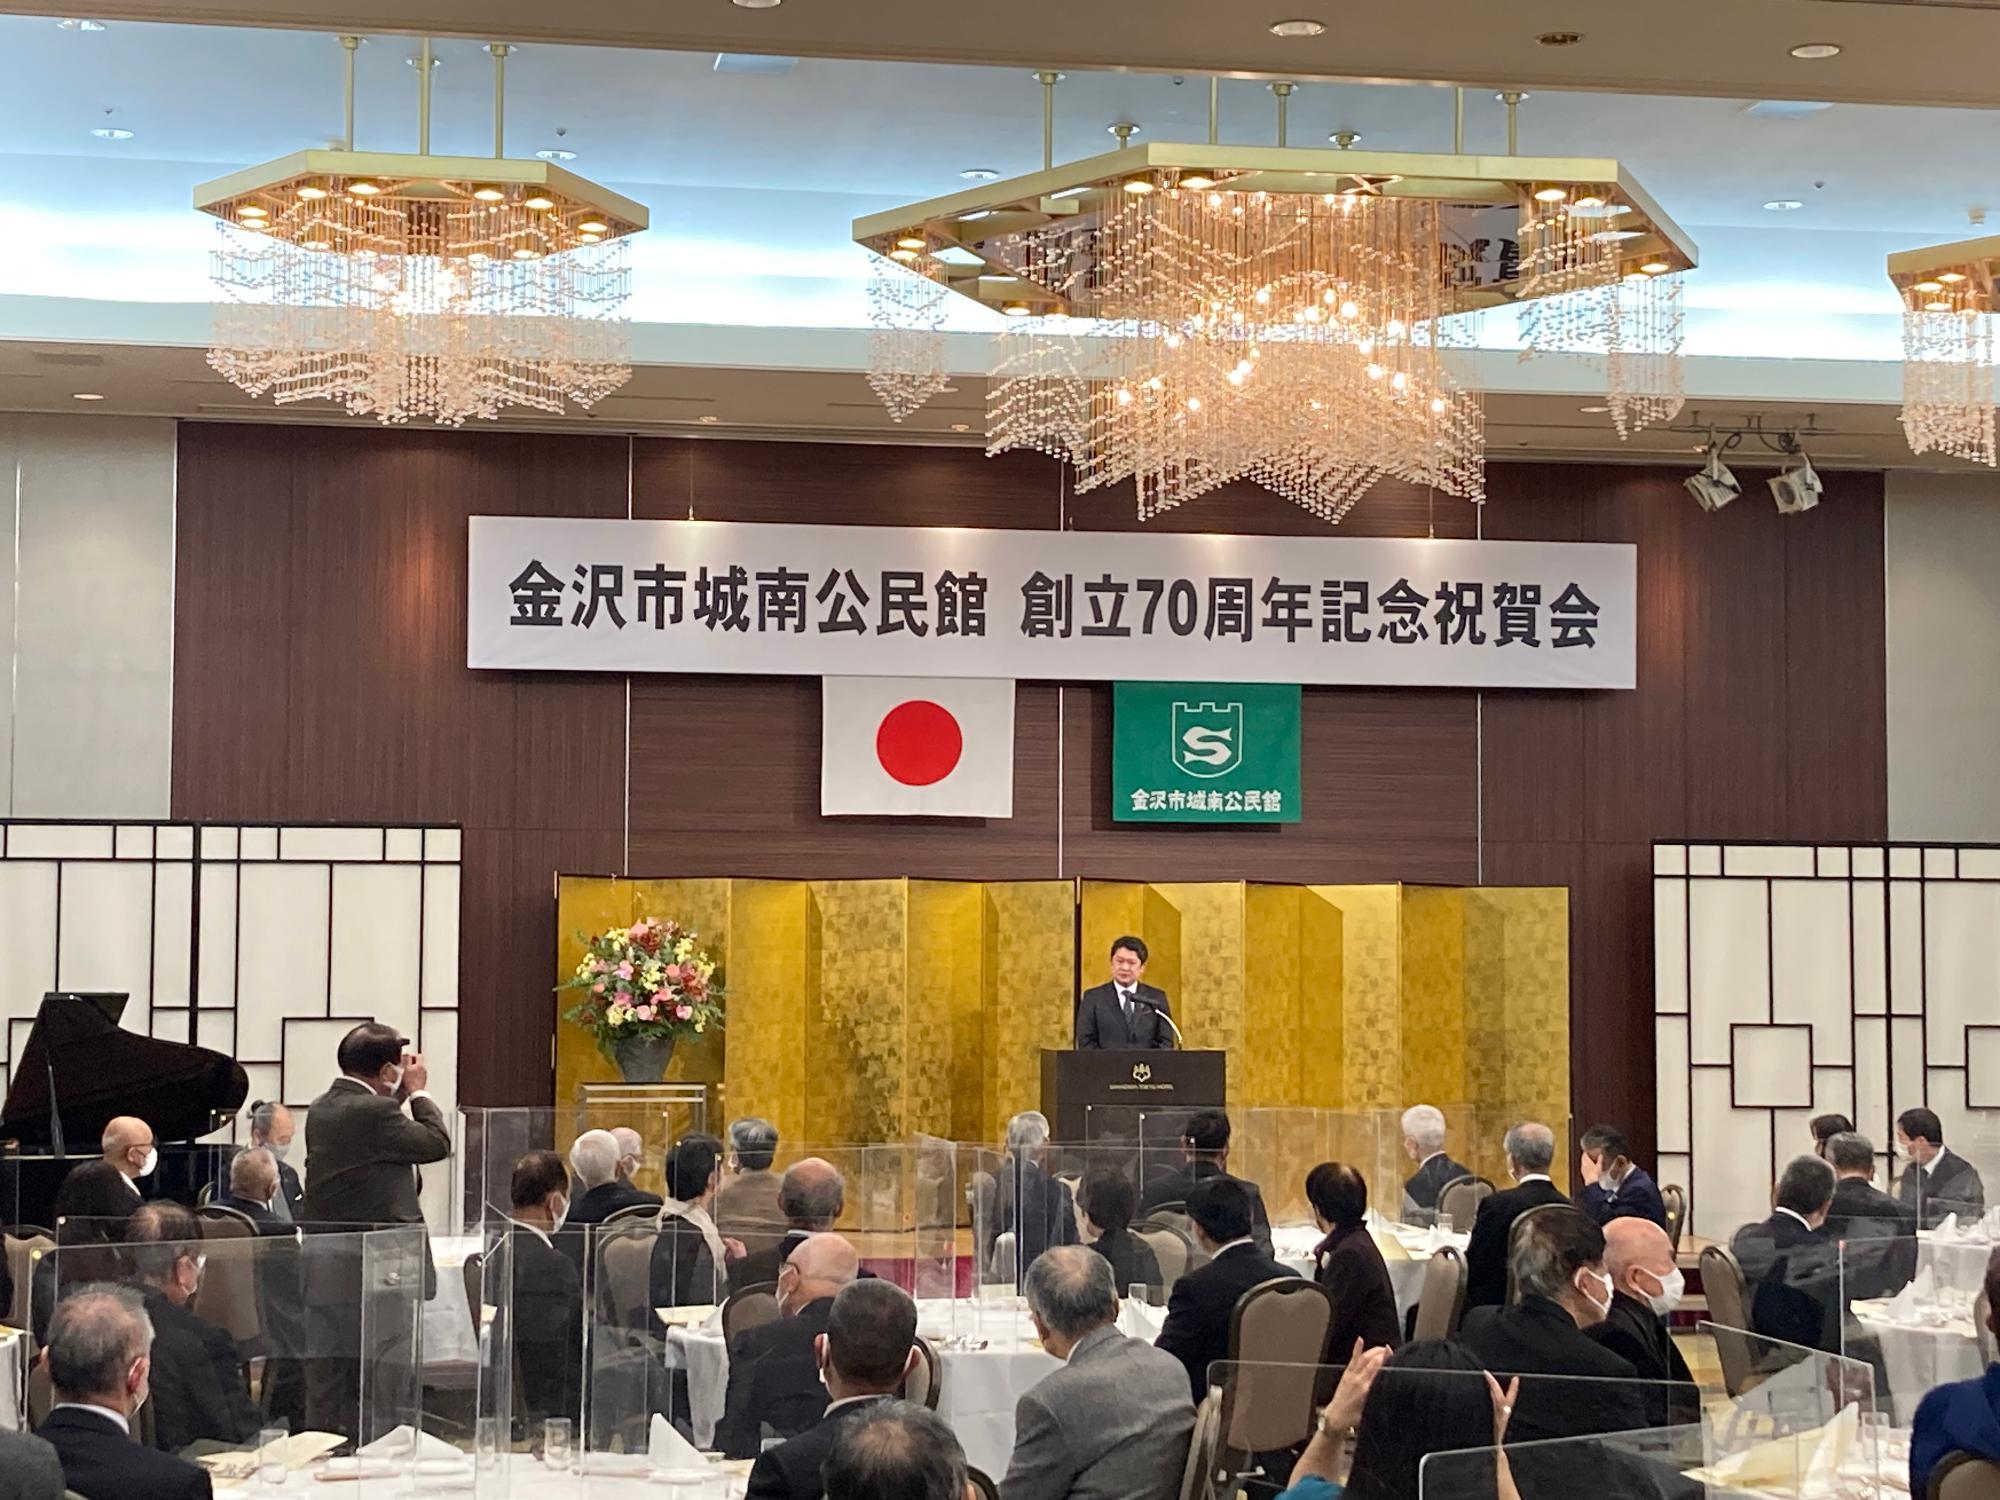 金沢市城南公民館創立70周年記念祝賀会の様子